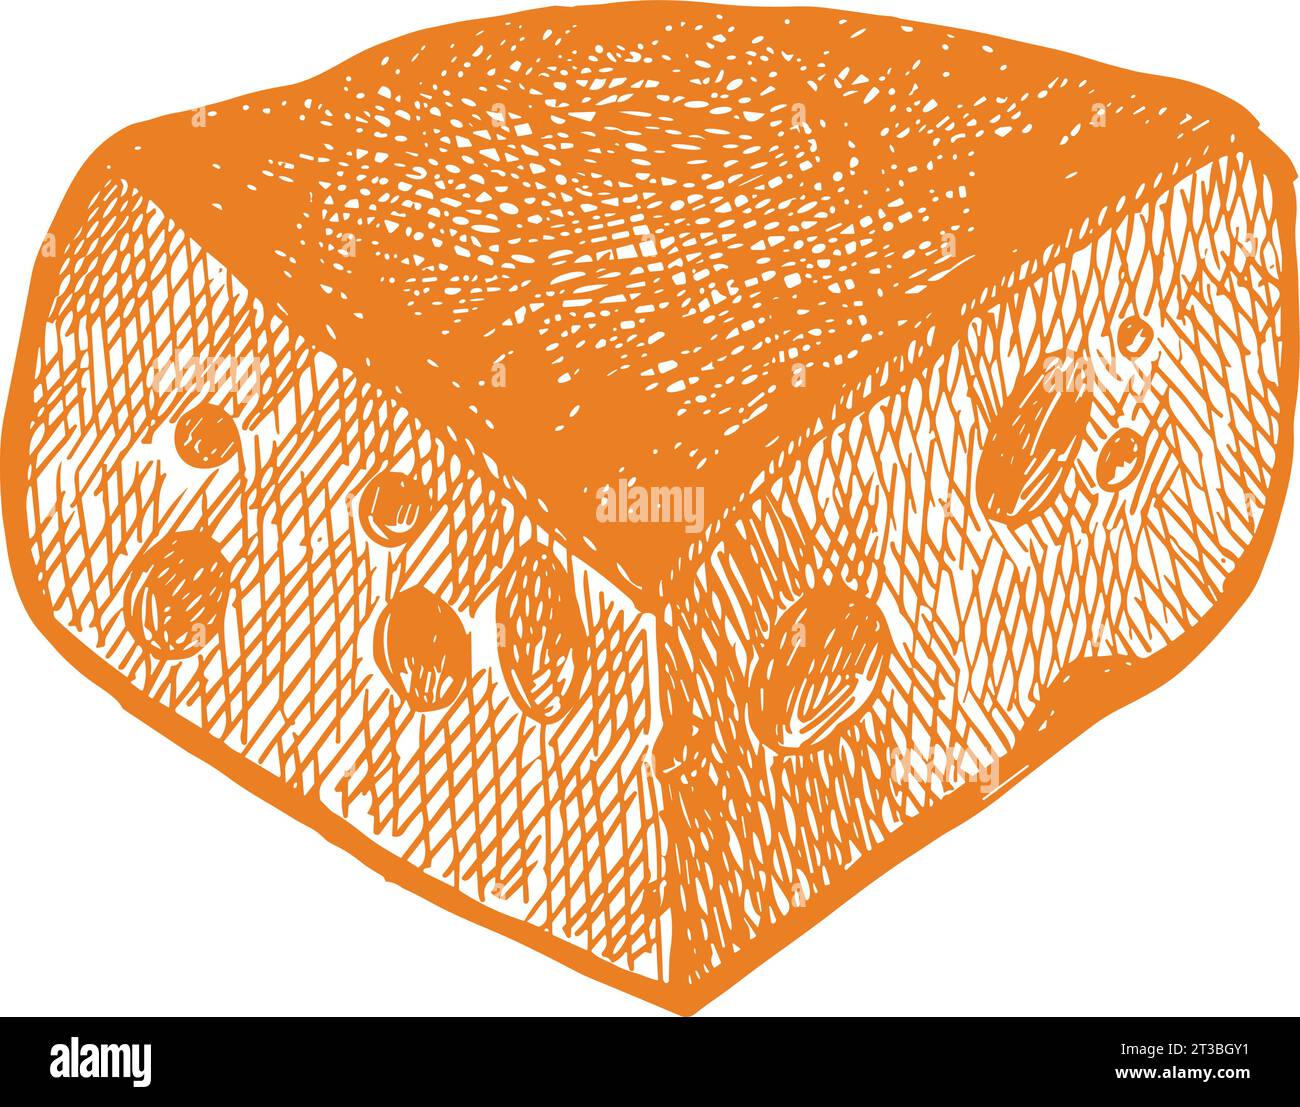 Acquerello formaggio svizzero triangolo emmental formaggio con fori. Deliziosa illustrazione disegnata a mano su sfondo bianco. Perfetto Illustrazione Vettoriale